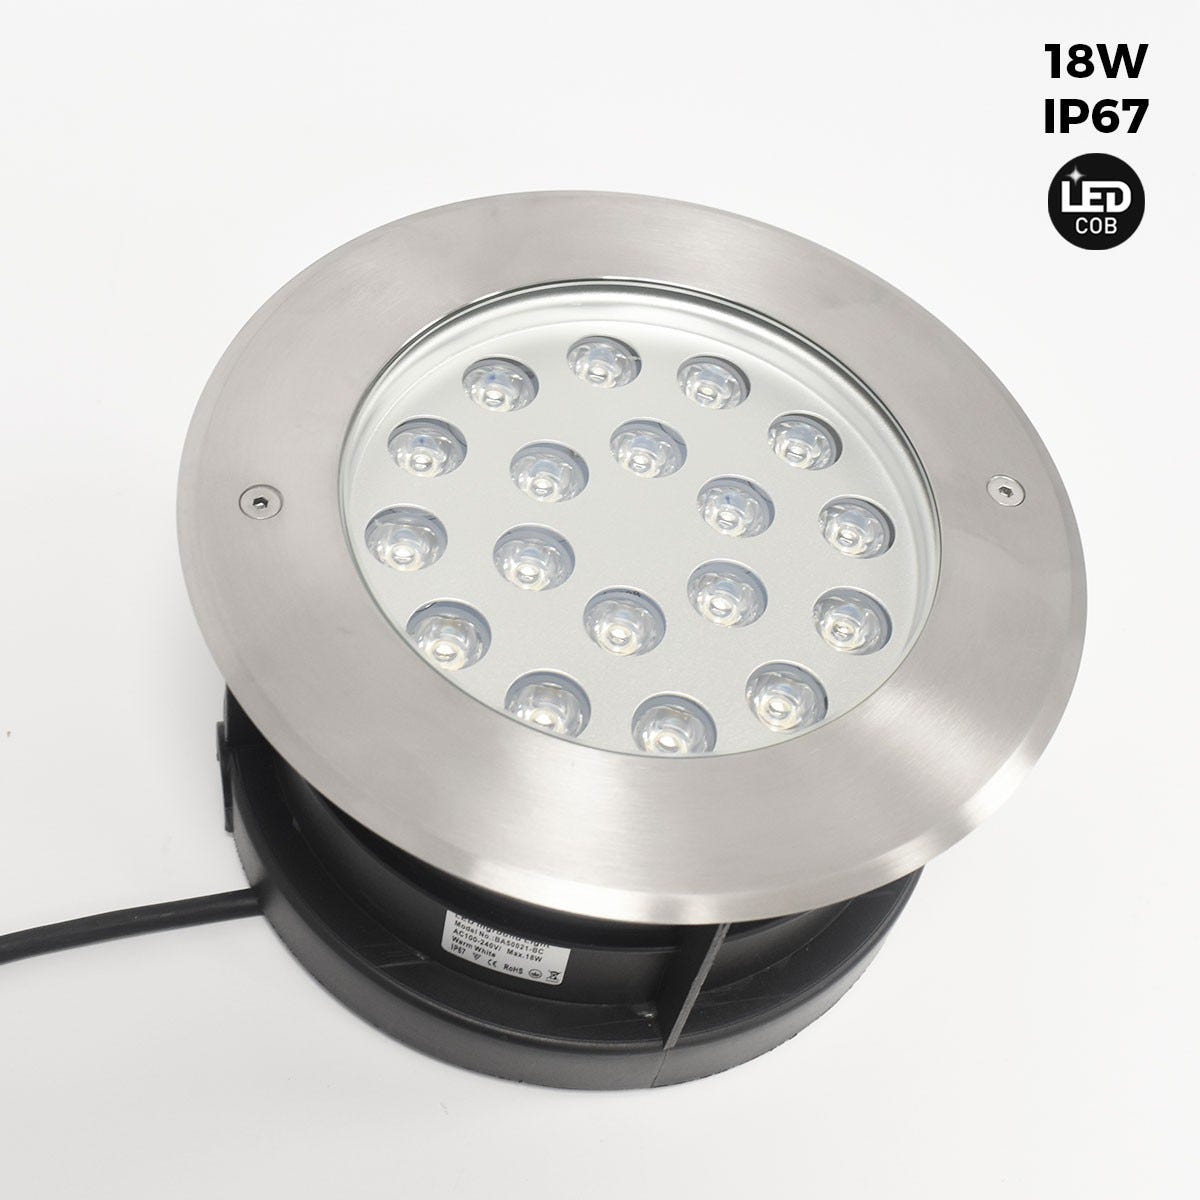 Faretto LED da incasso a pavimento 18W - Bianco caldo - Ø21cm - IP67 - 220v  - Bianco Caldo